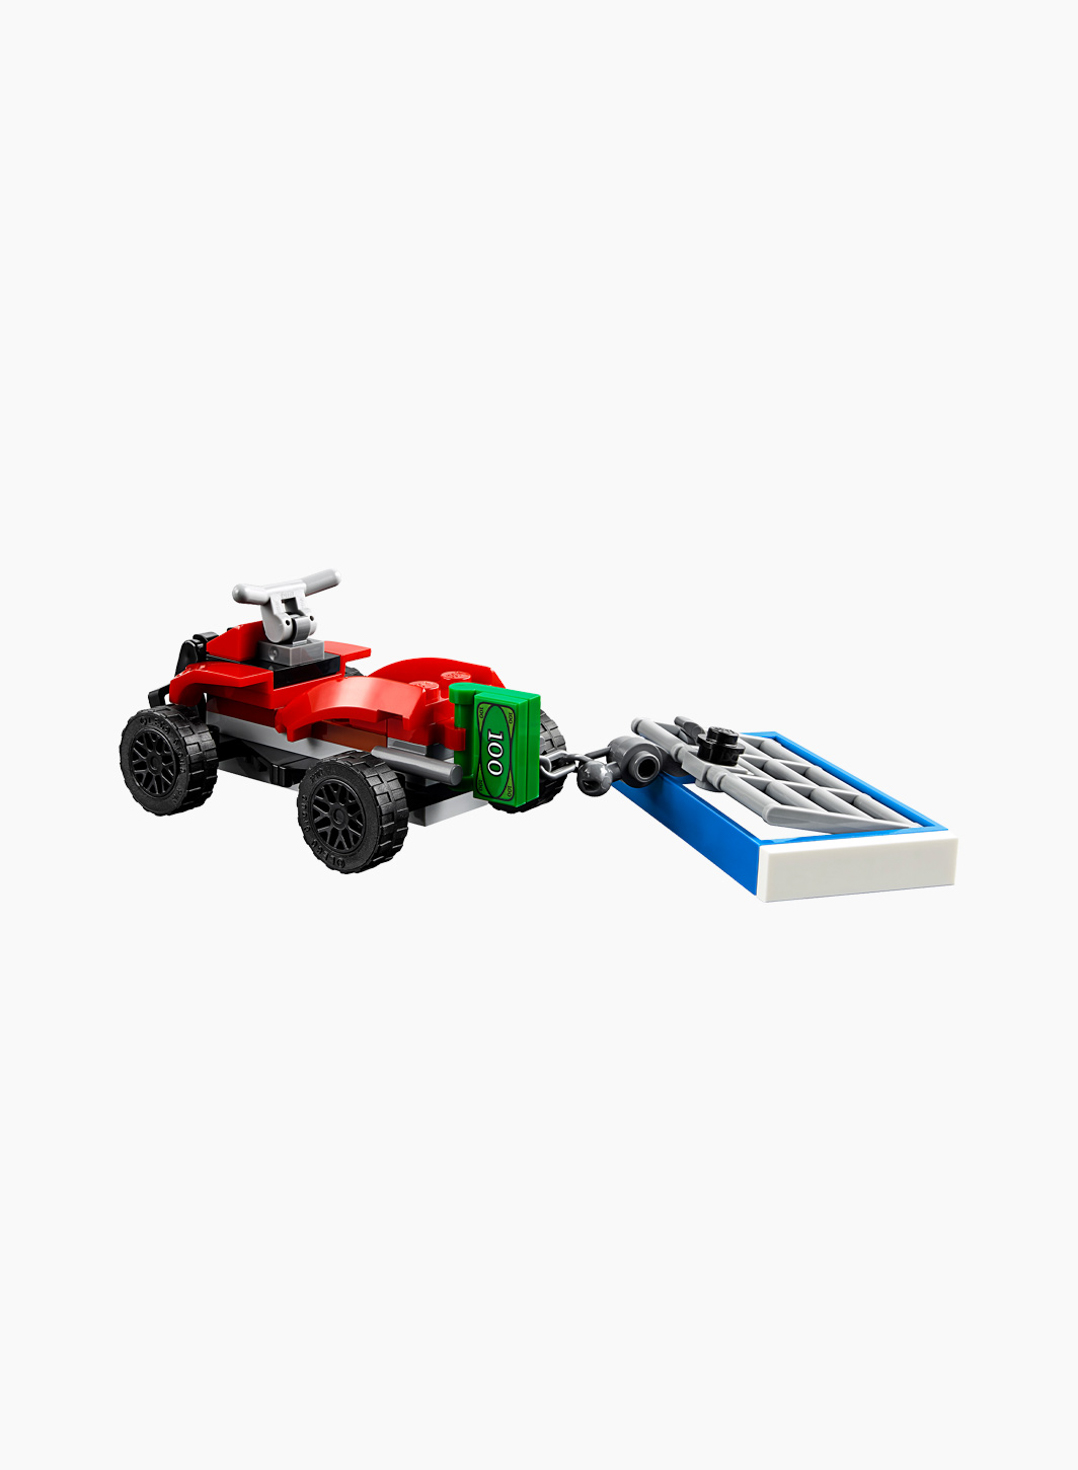 Lego City Конструктор Полицейский вертолётный транспорт